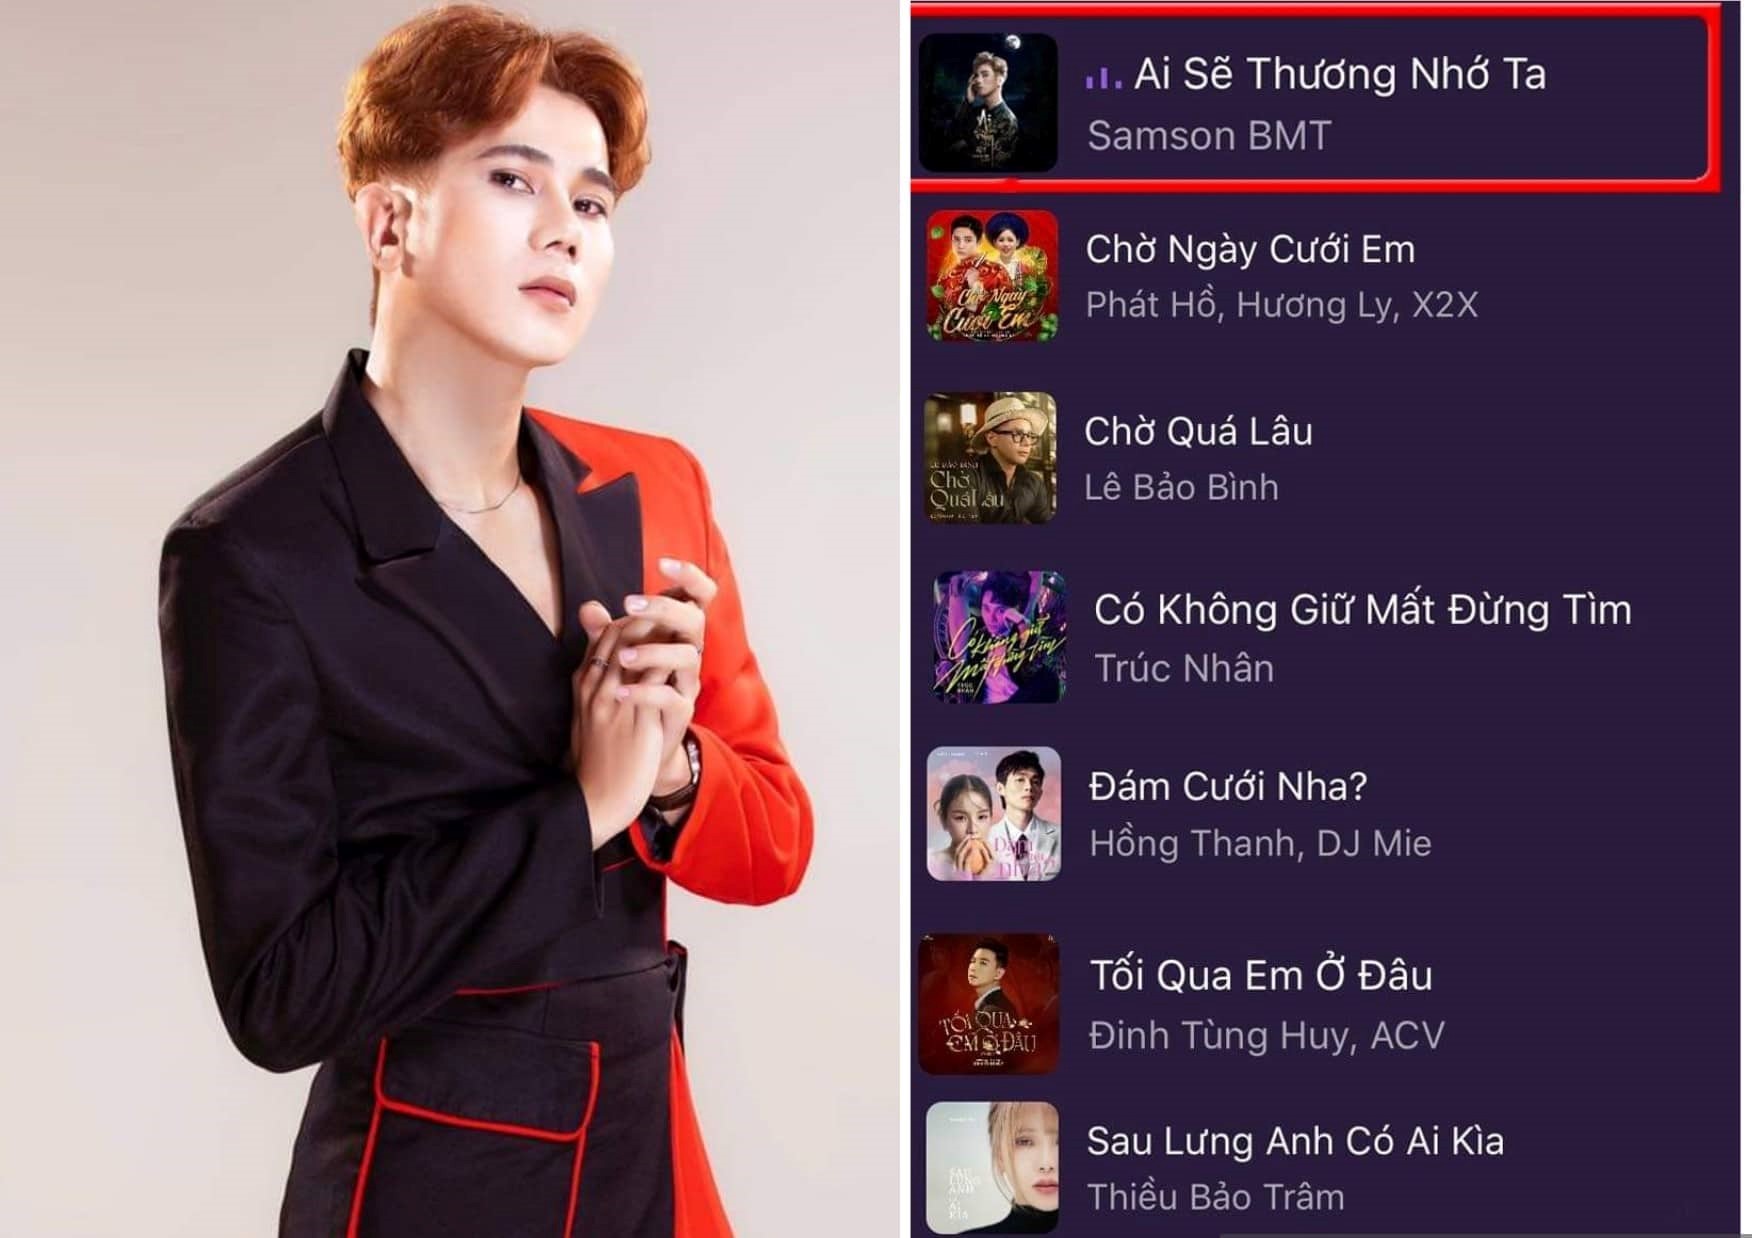 Ca khúc mới của Samson BMT vượt loạt&nbsp; hit của Hương Ly, Lê Bảo Bình trên bảng xếp hạng nhạc&nbsp;Việt